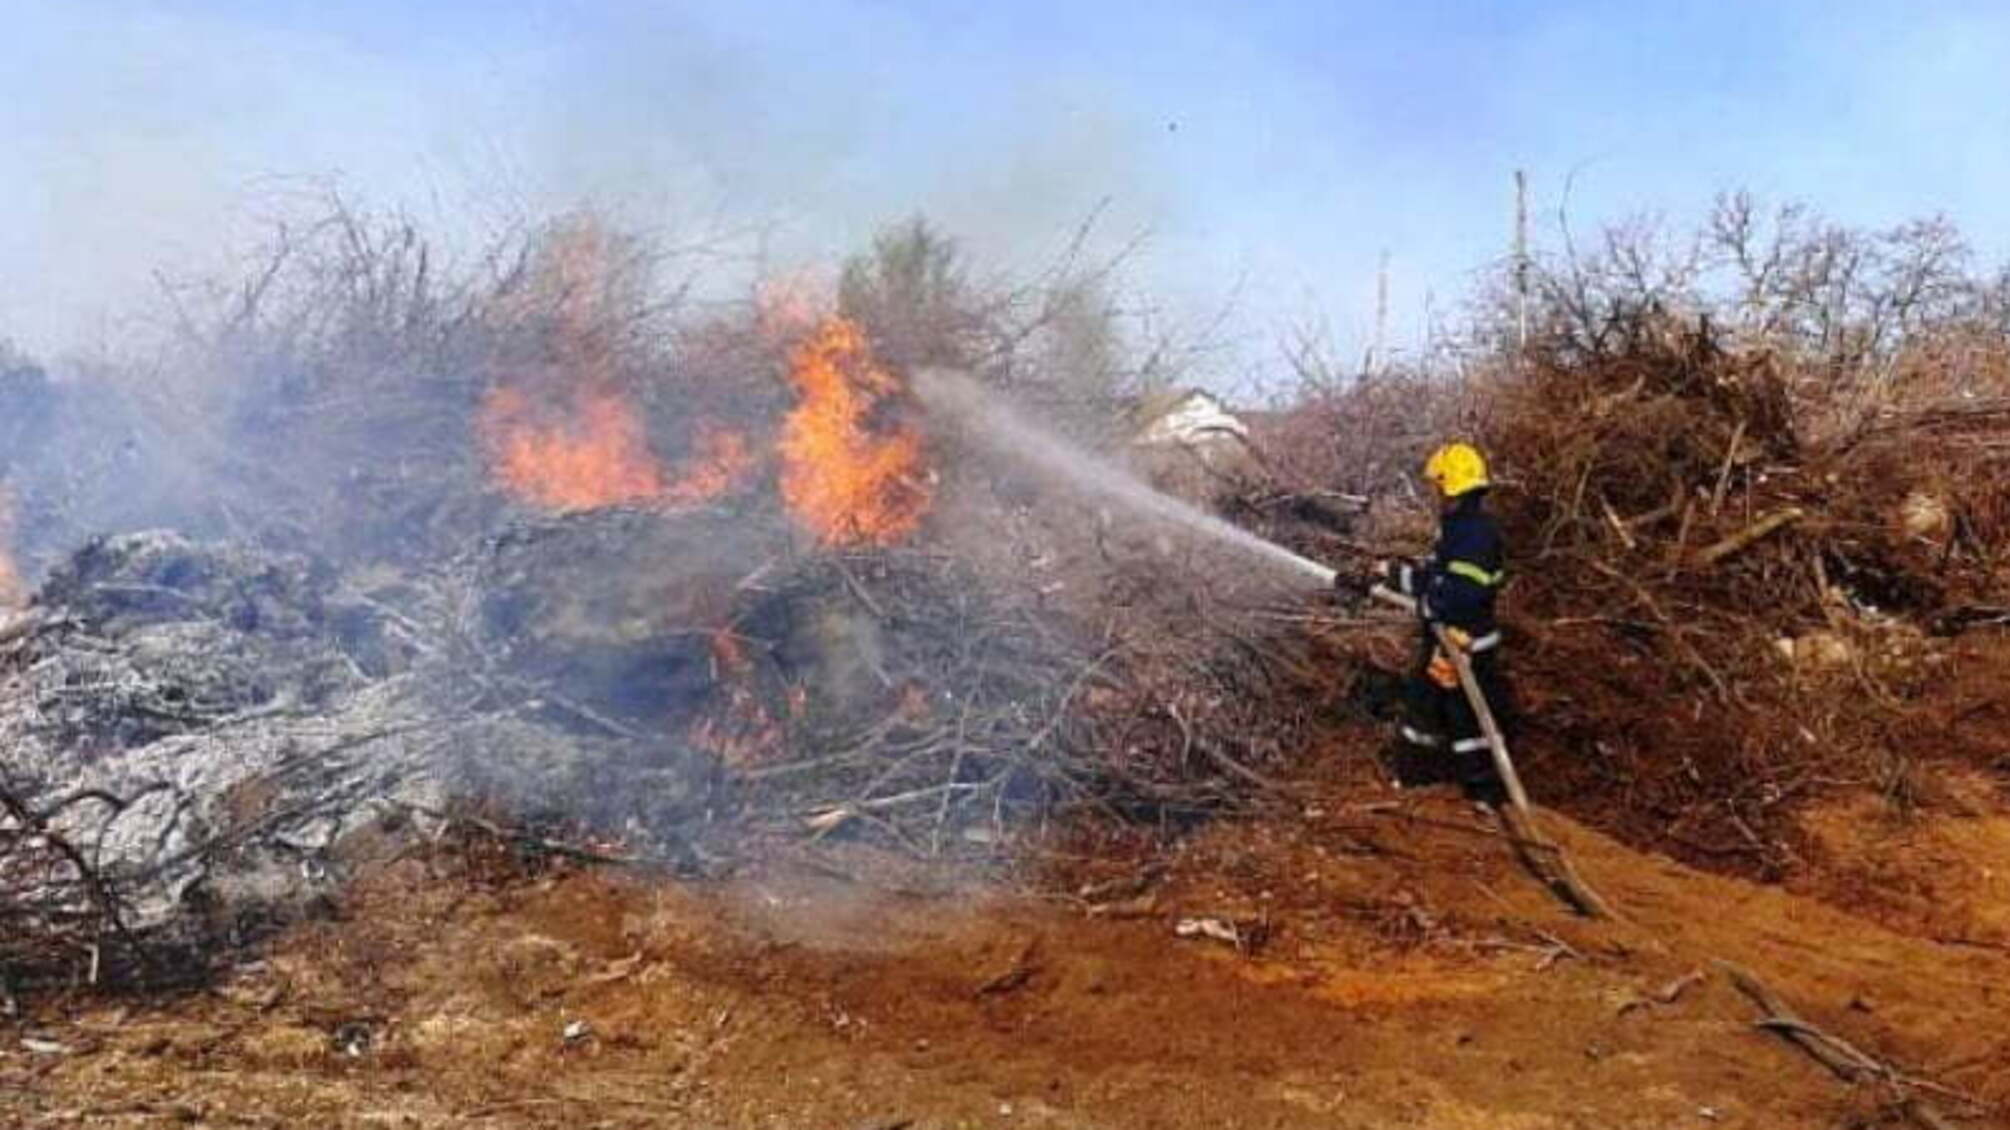 Херсонська область: в області ліквідовано 9 пожеж в екосистемах